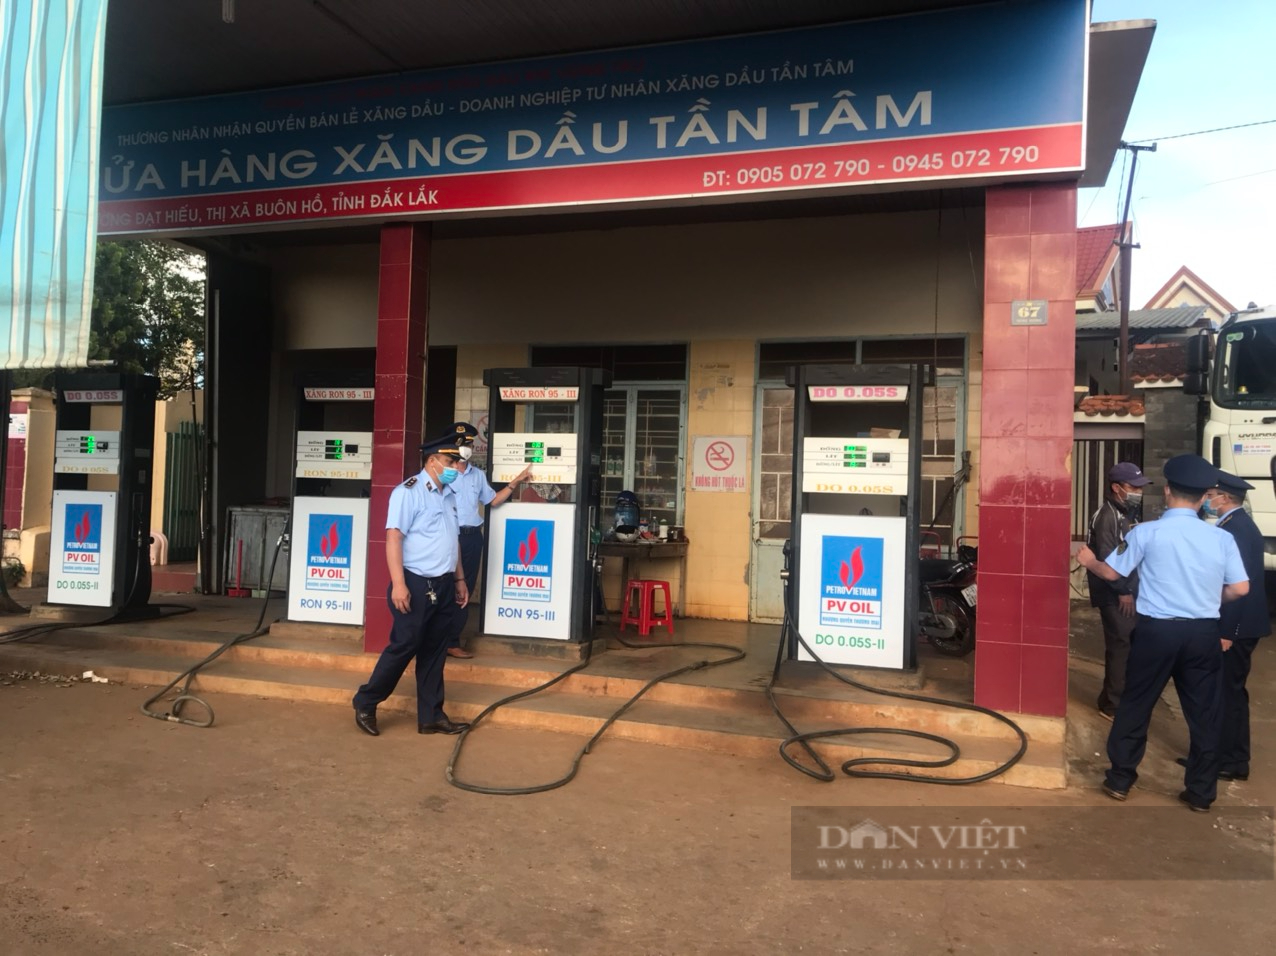 Đắk Lắk: Cục Quản lý thị trường vào cuộc phát hiện nhiều cửa hàng xăng dầu đóng cửa - Ảnh 1.